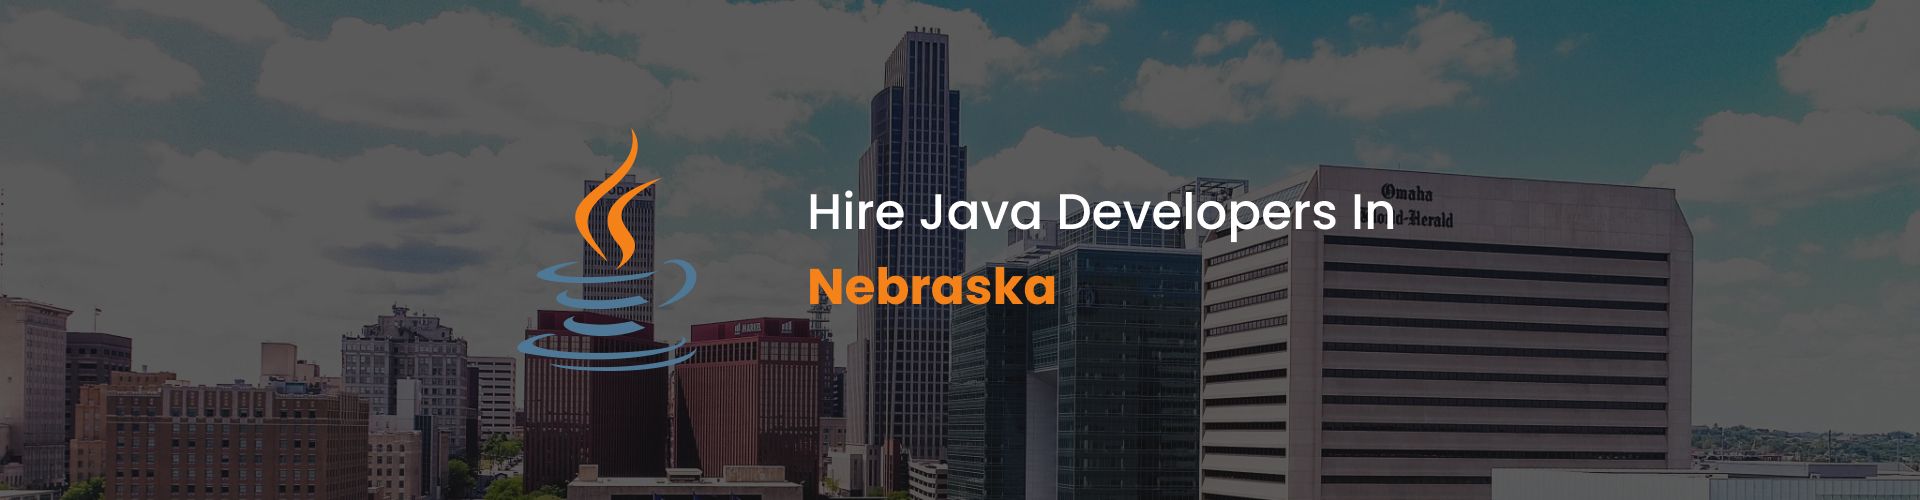 hire java developers in nebraska